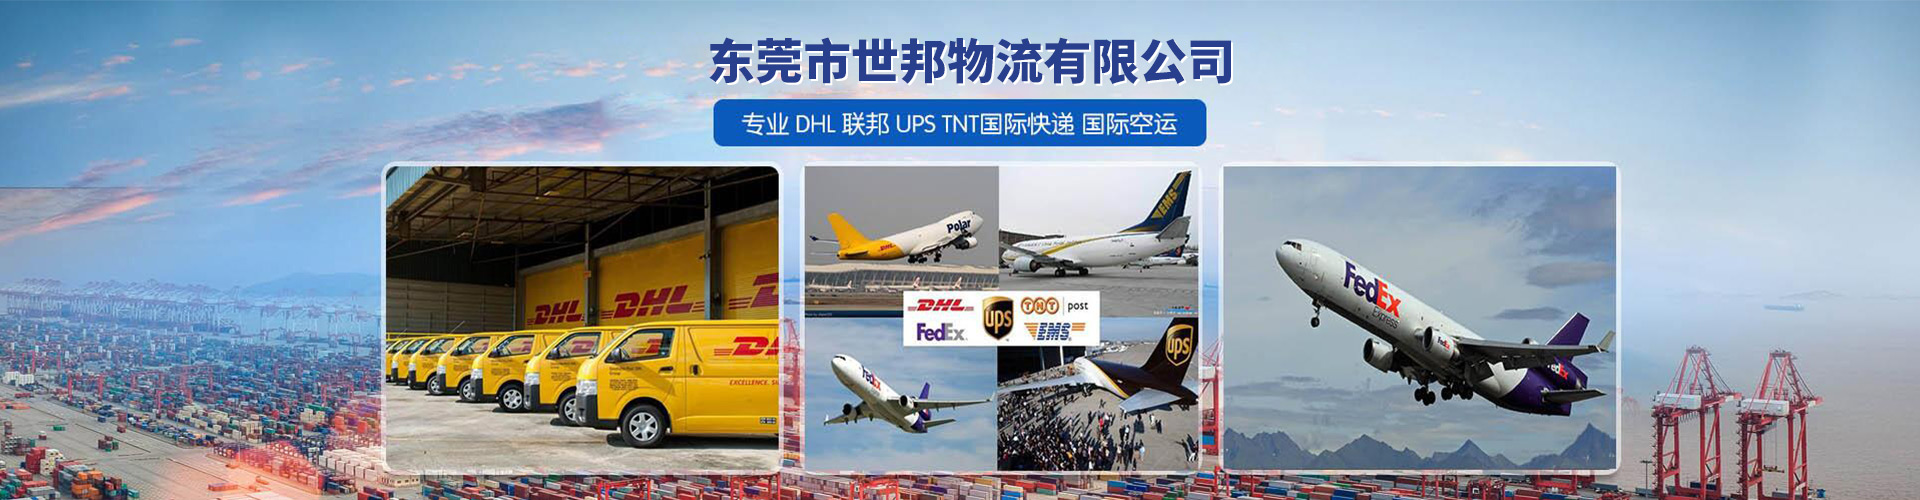 空运快递 清远DHL国际快递运费 贴心服务